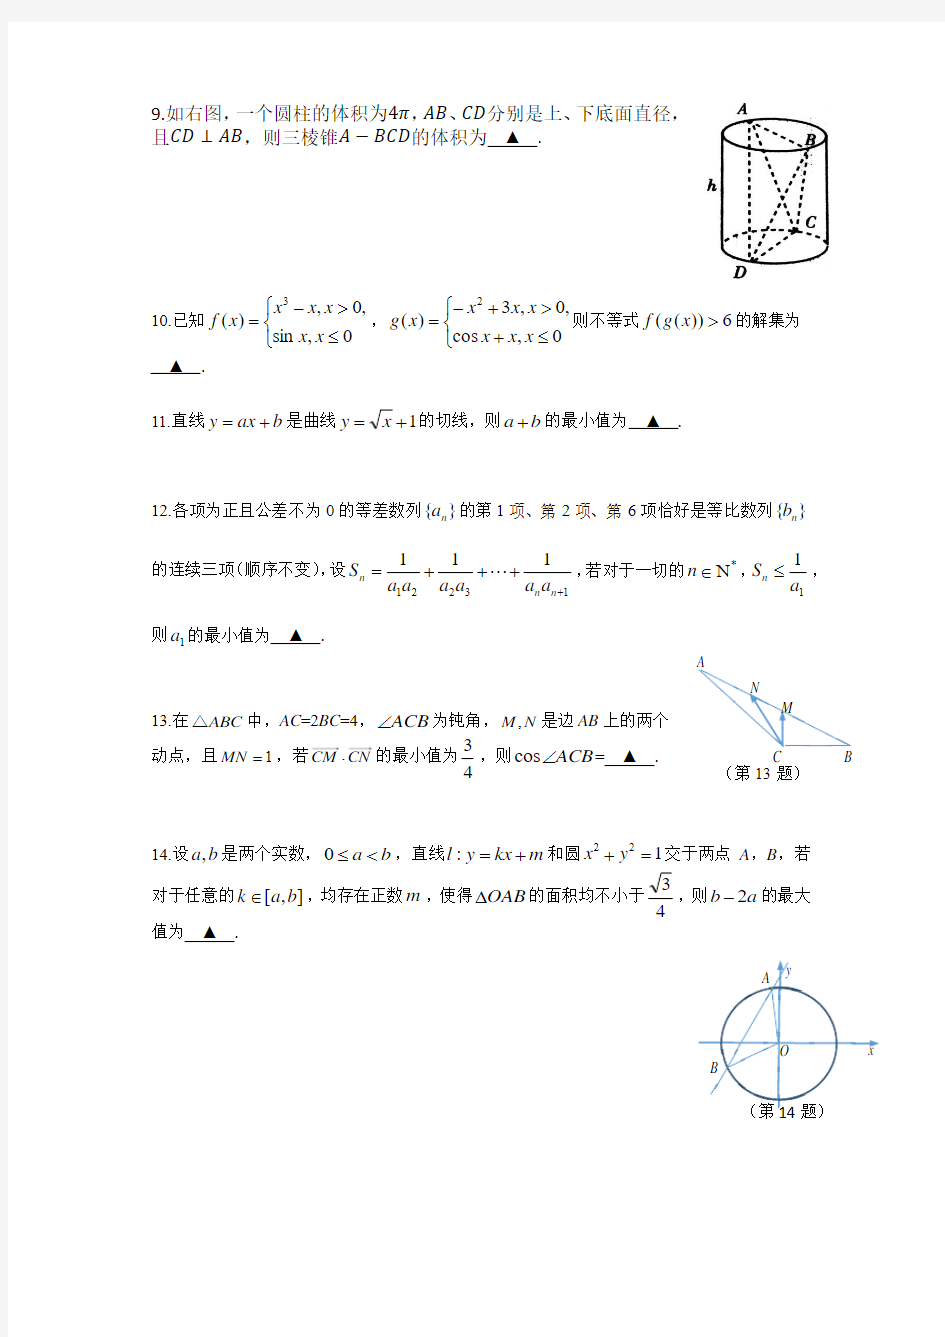 2020南京市高考数学模拟